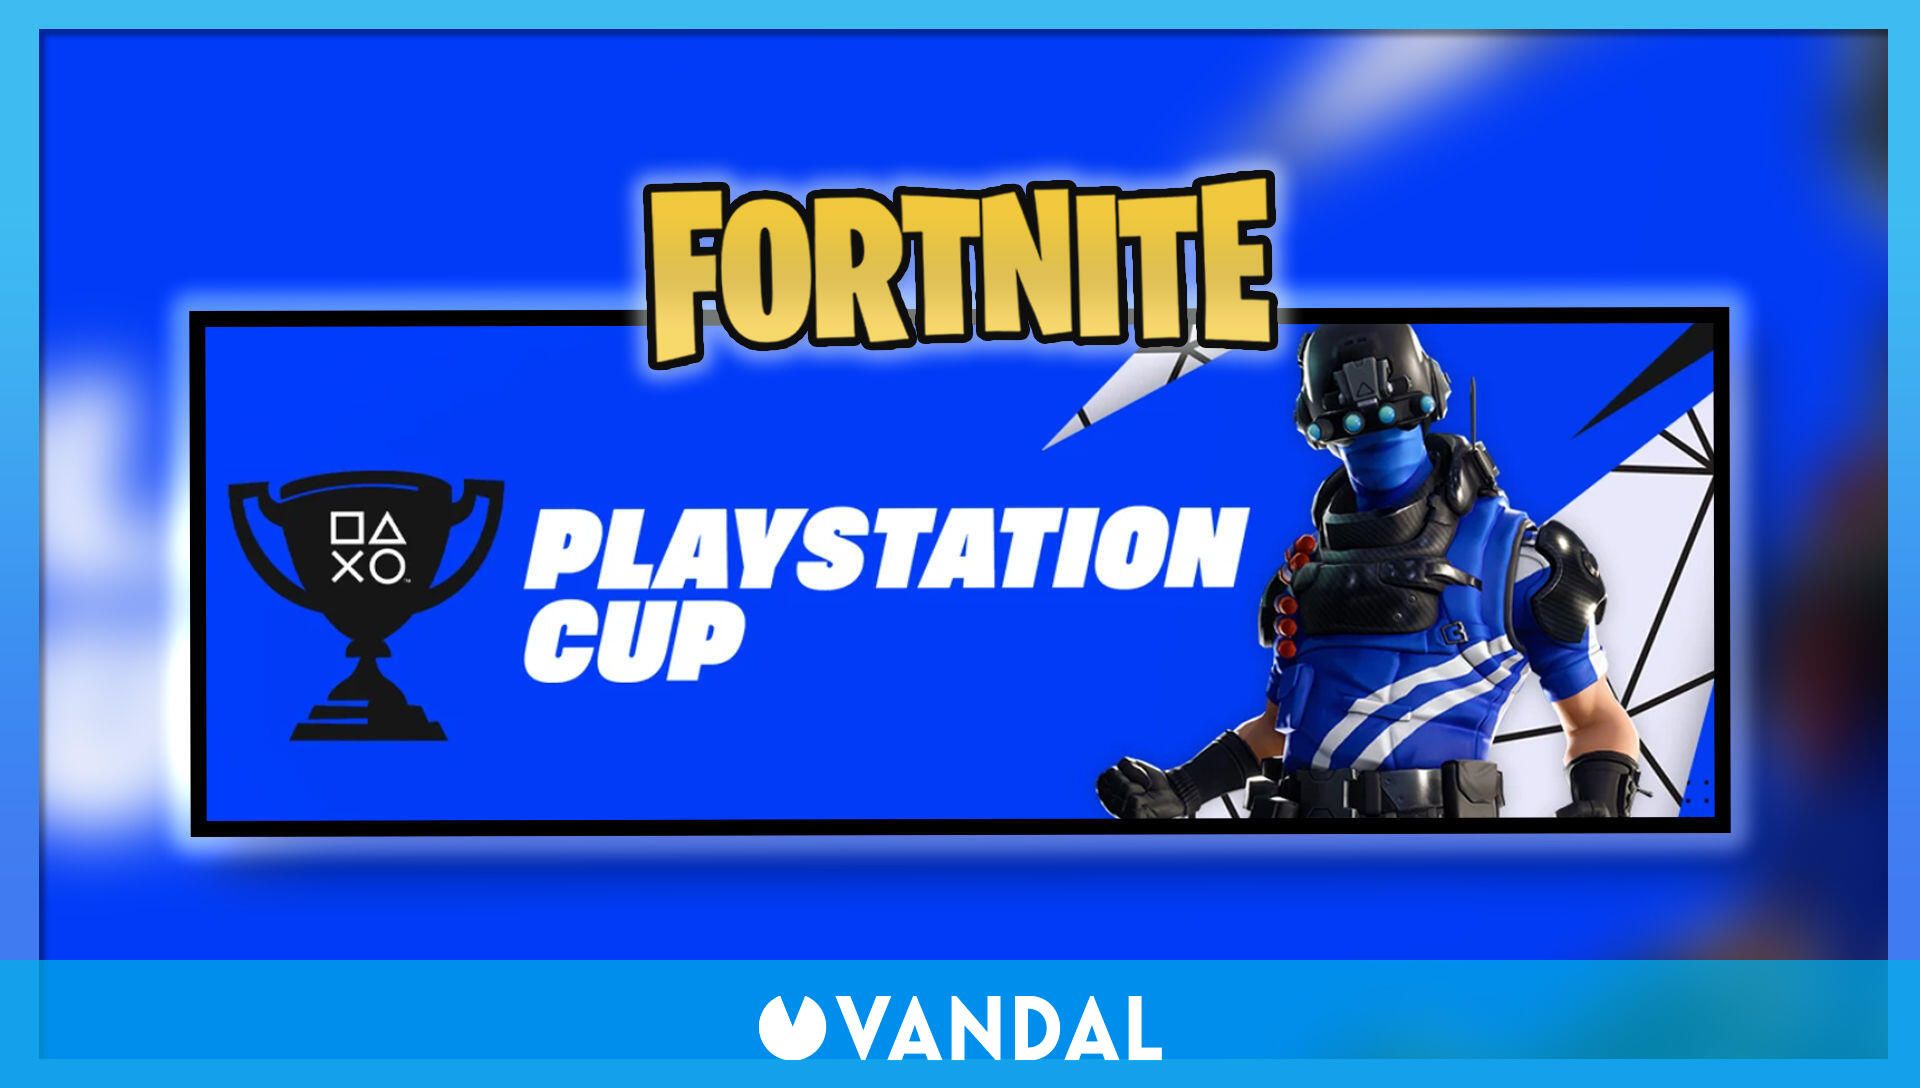 Copa de PlayStation en (11 y 12 marzo): Cómo participar premios - Vandal